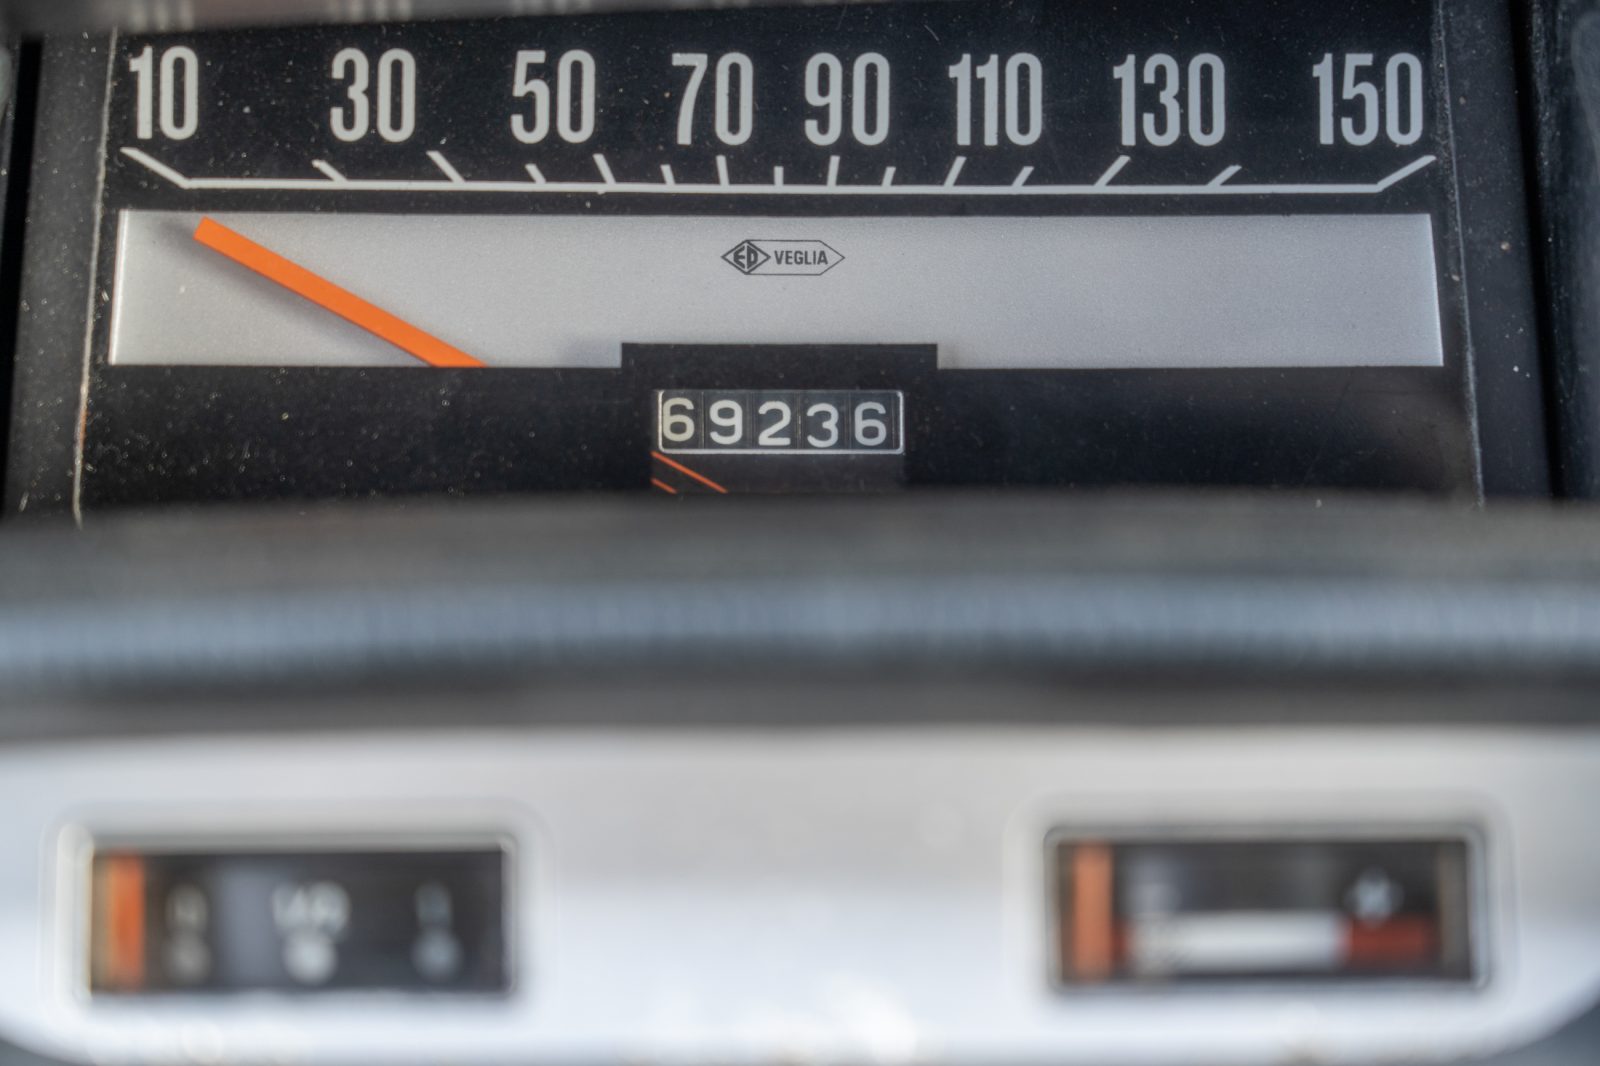 M35 No. 473 (1971) Te koop - detail dashboard